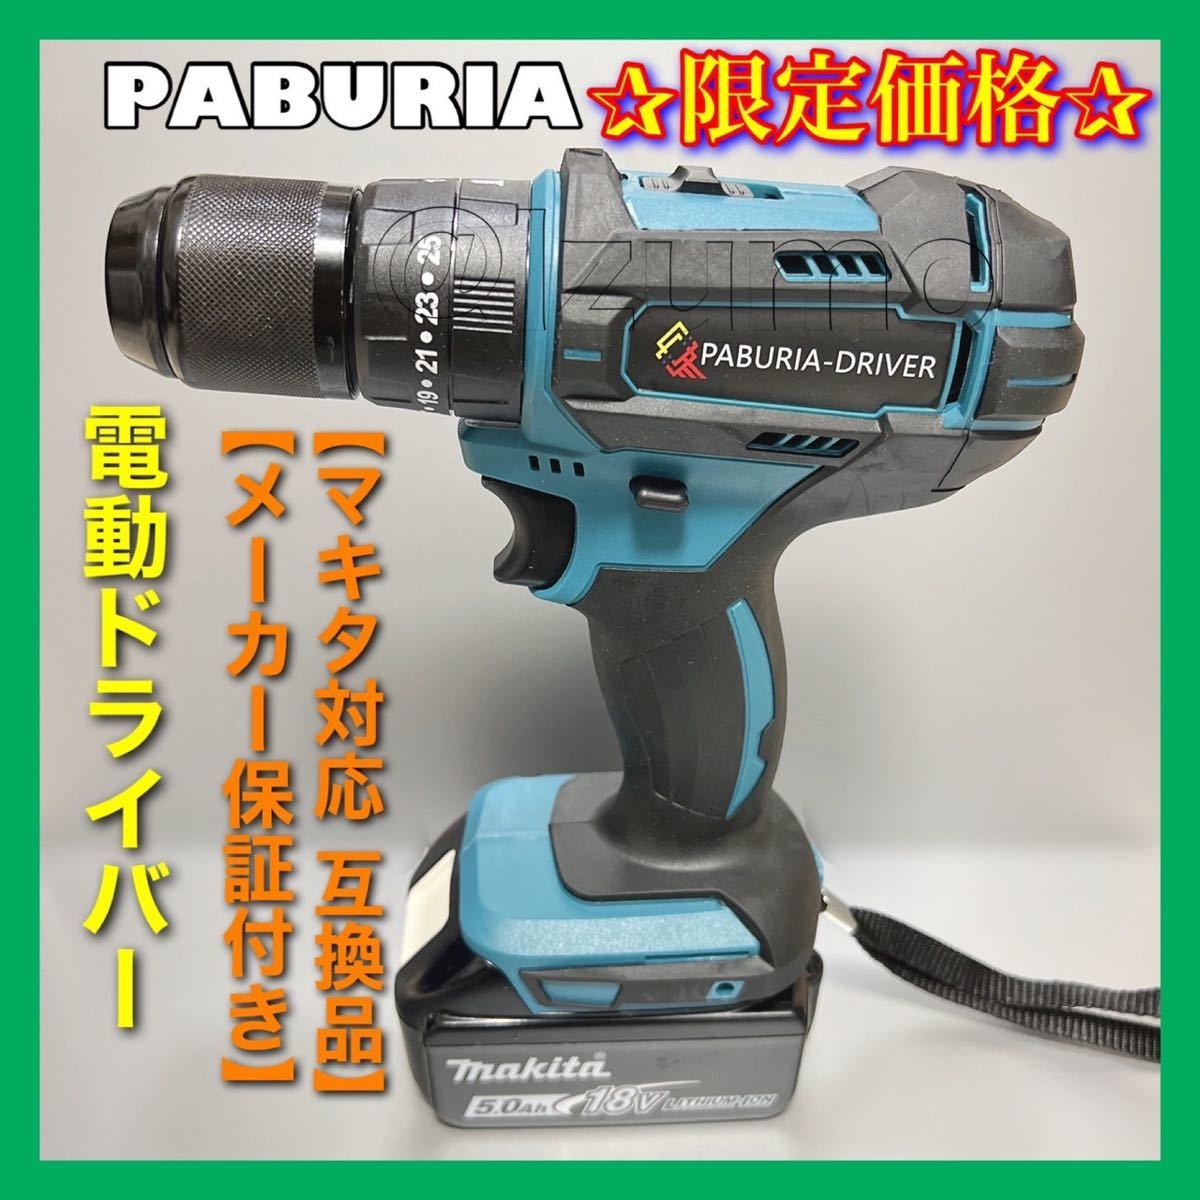 公式通販 PABURIA 新品 マキタ18v 互換インパクトレンチ